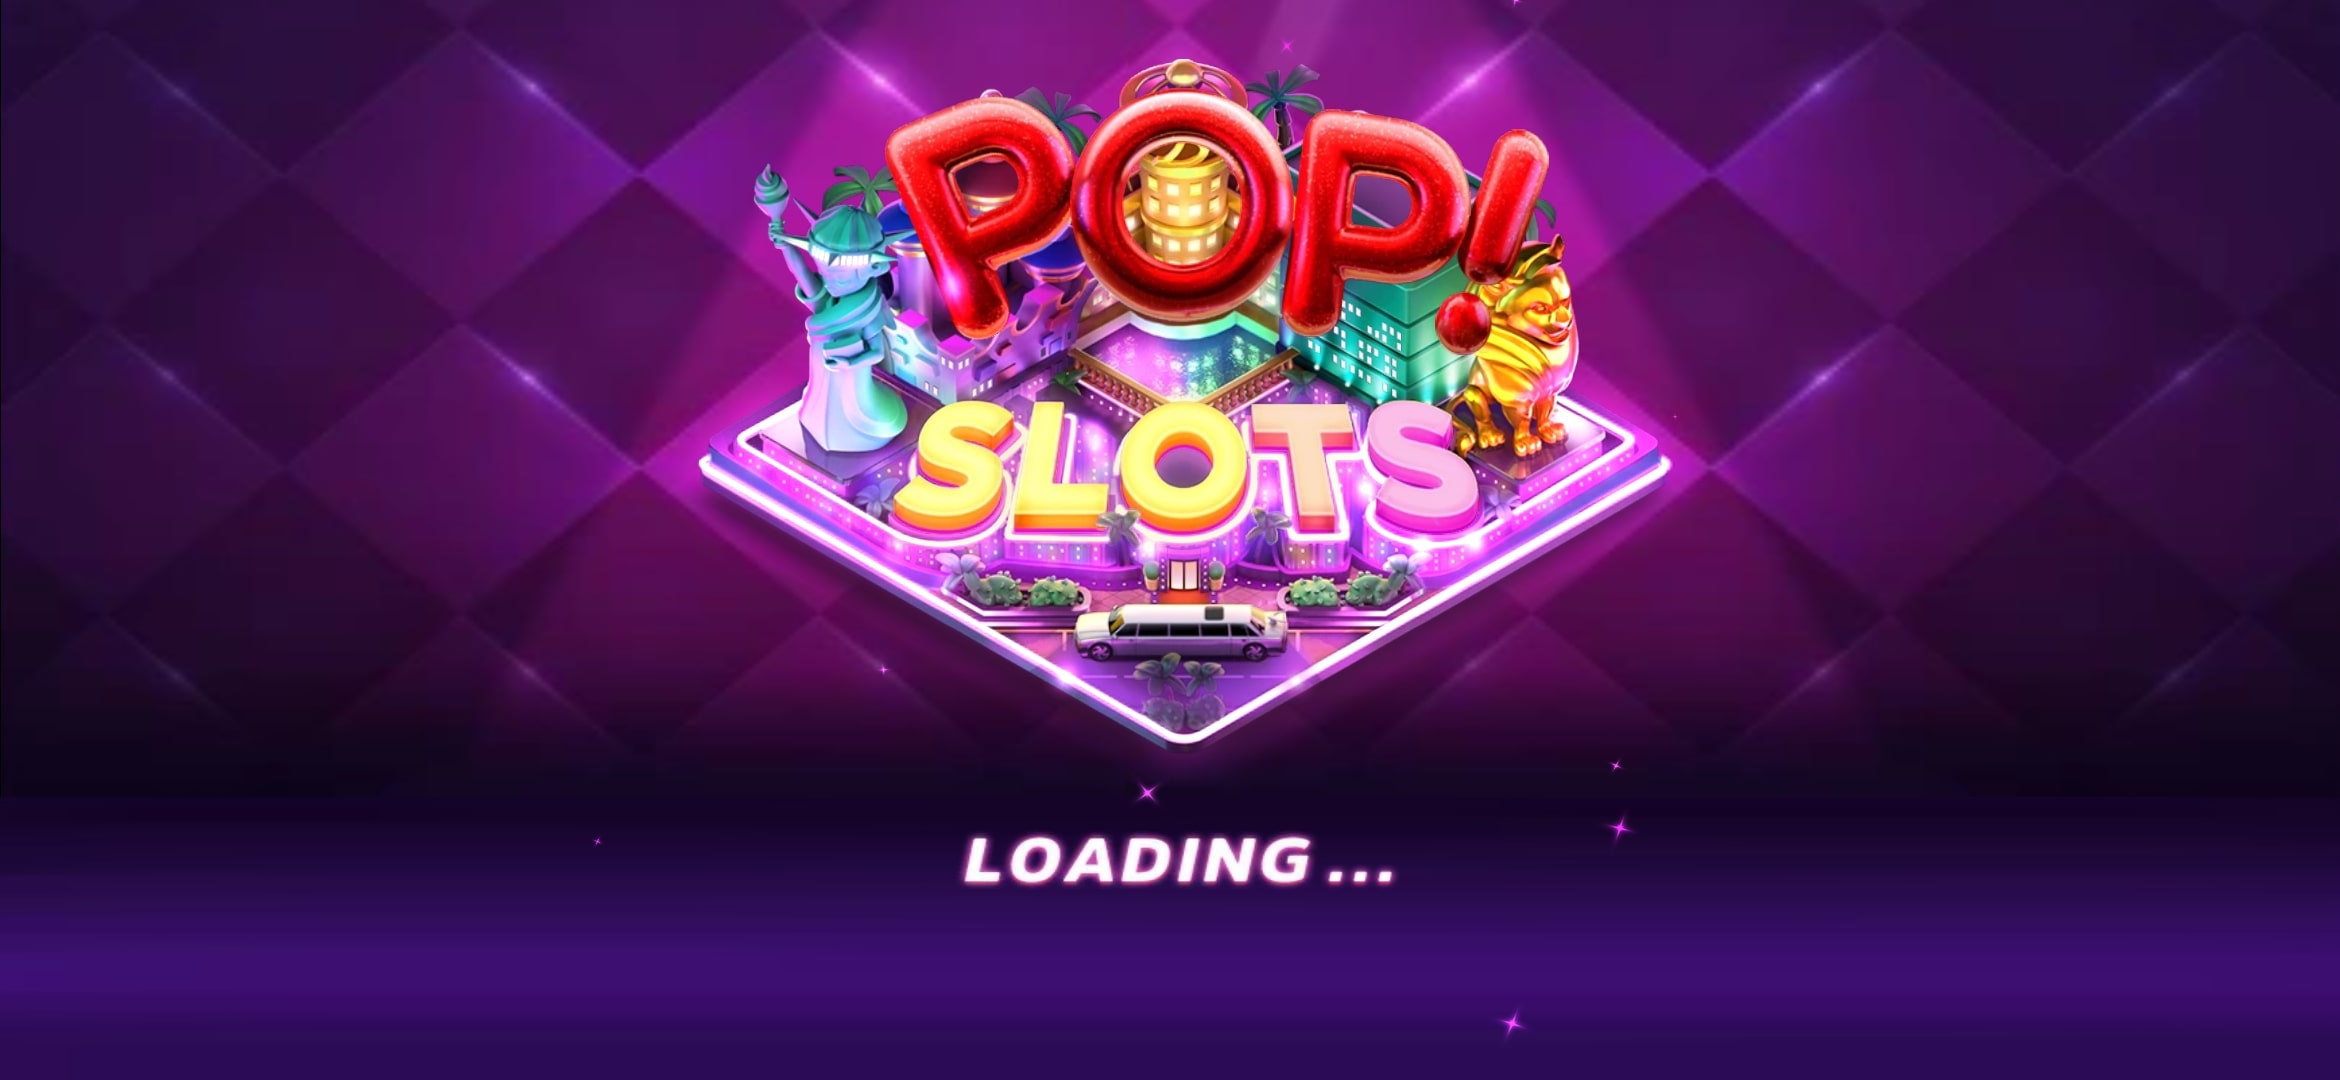 Pop slot casino бонусы как воспользоваться бонусами на 1win